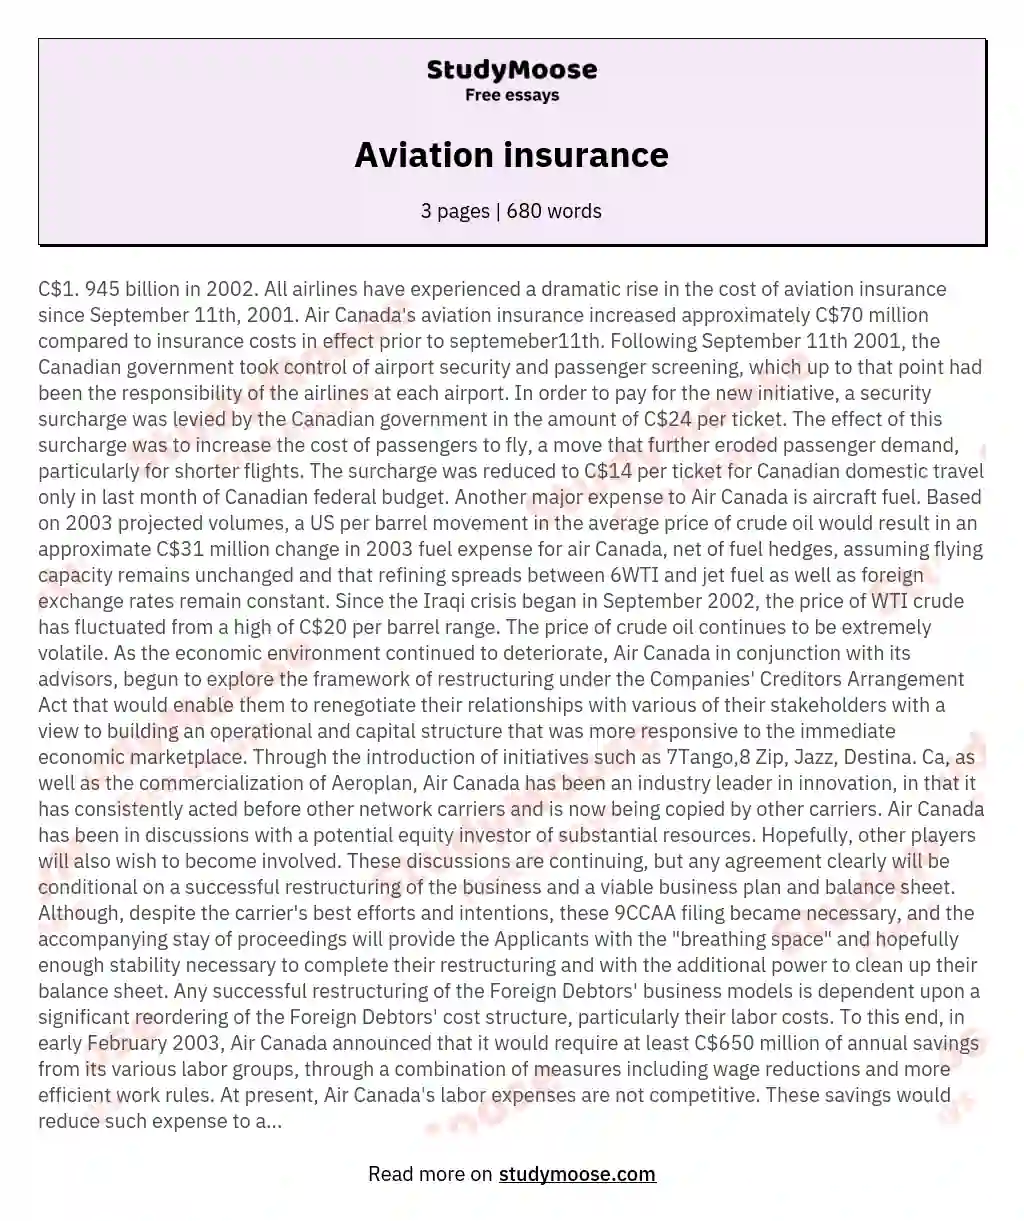 Aviation insurance essay